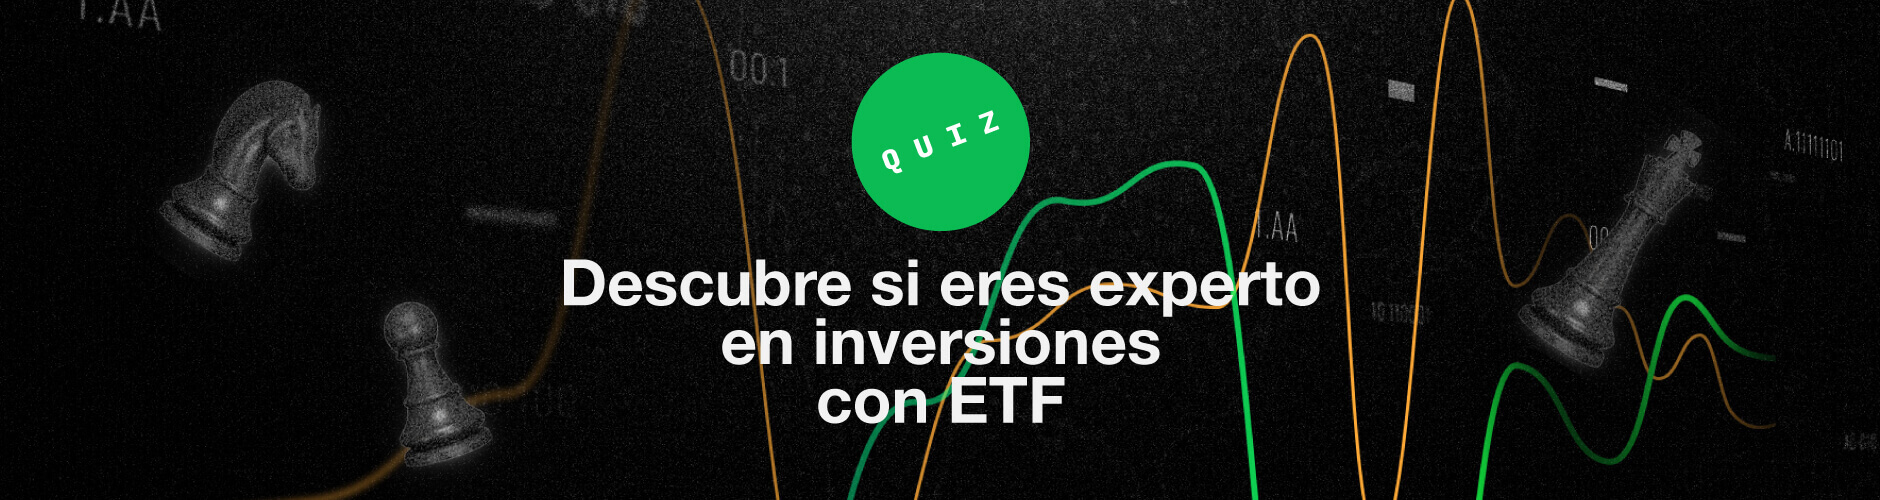 Descubre si eres experto en inversiones con ETF